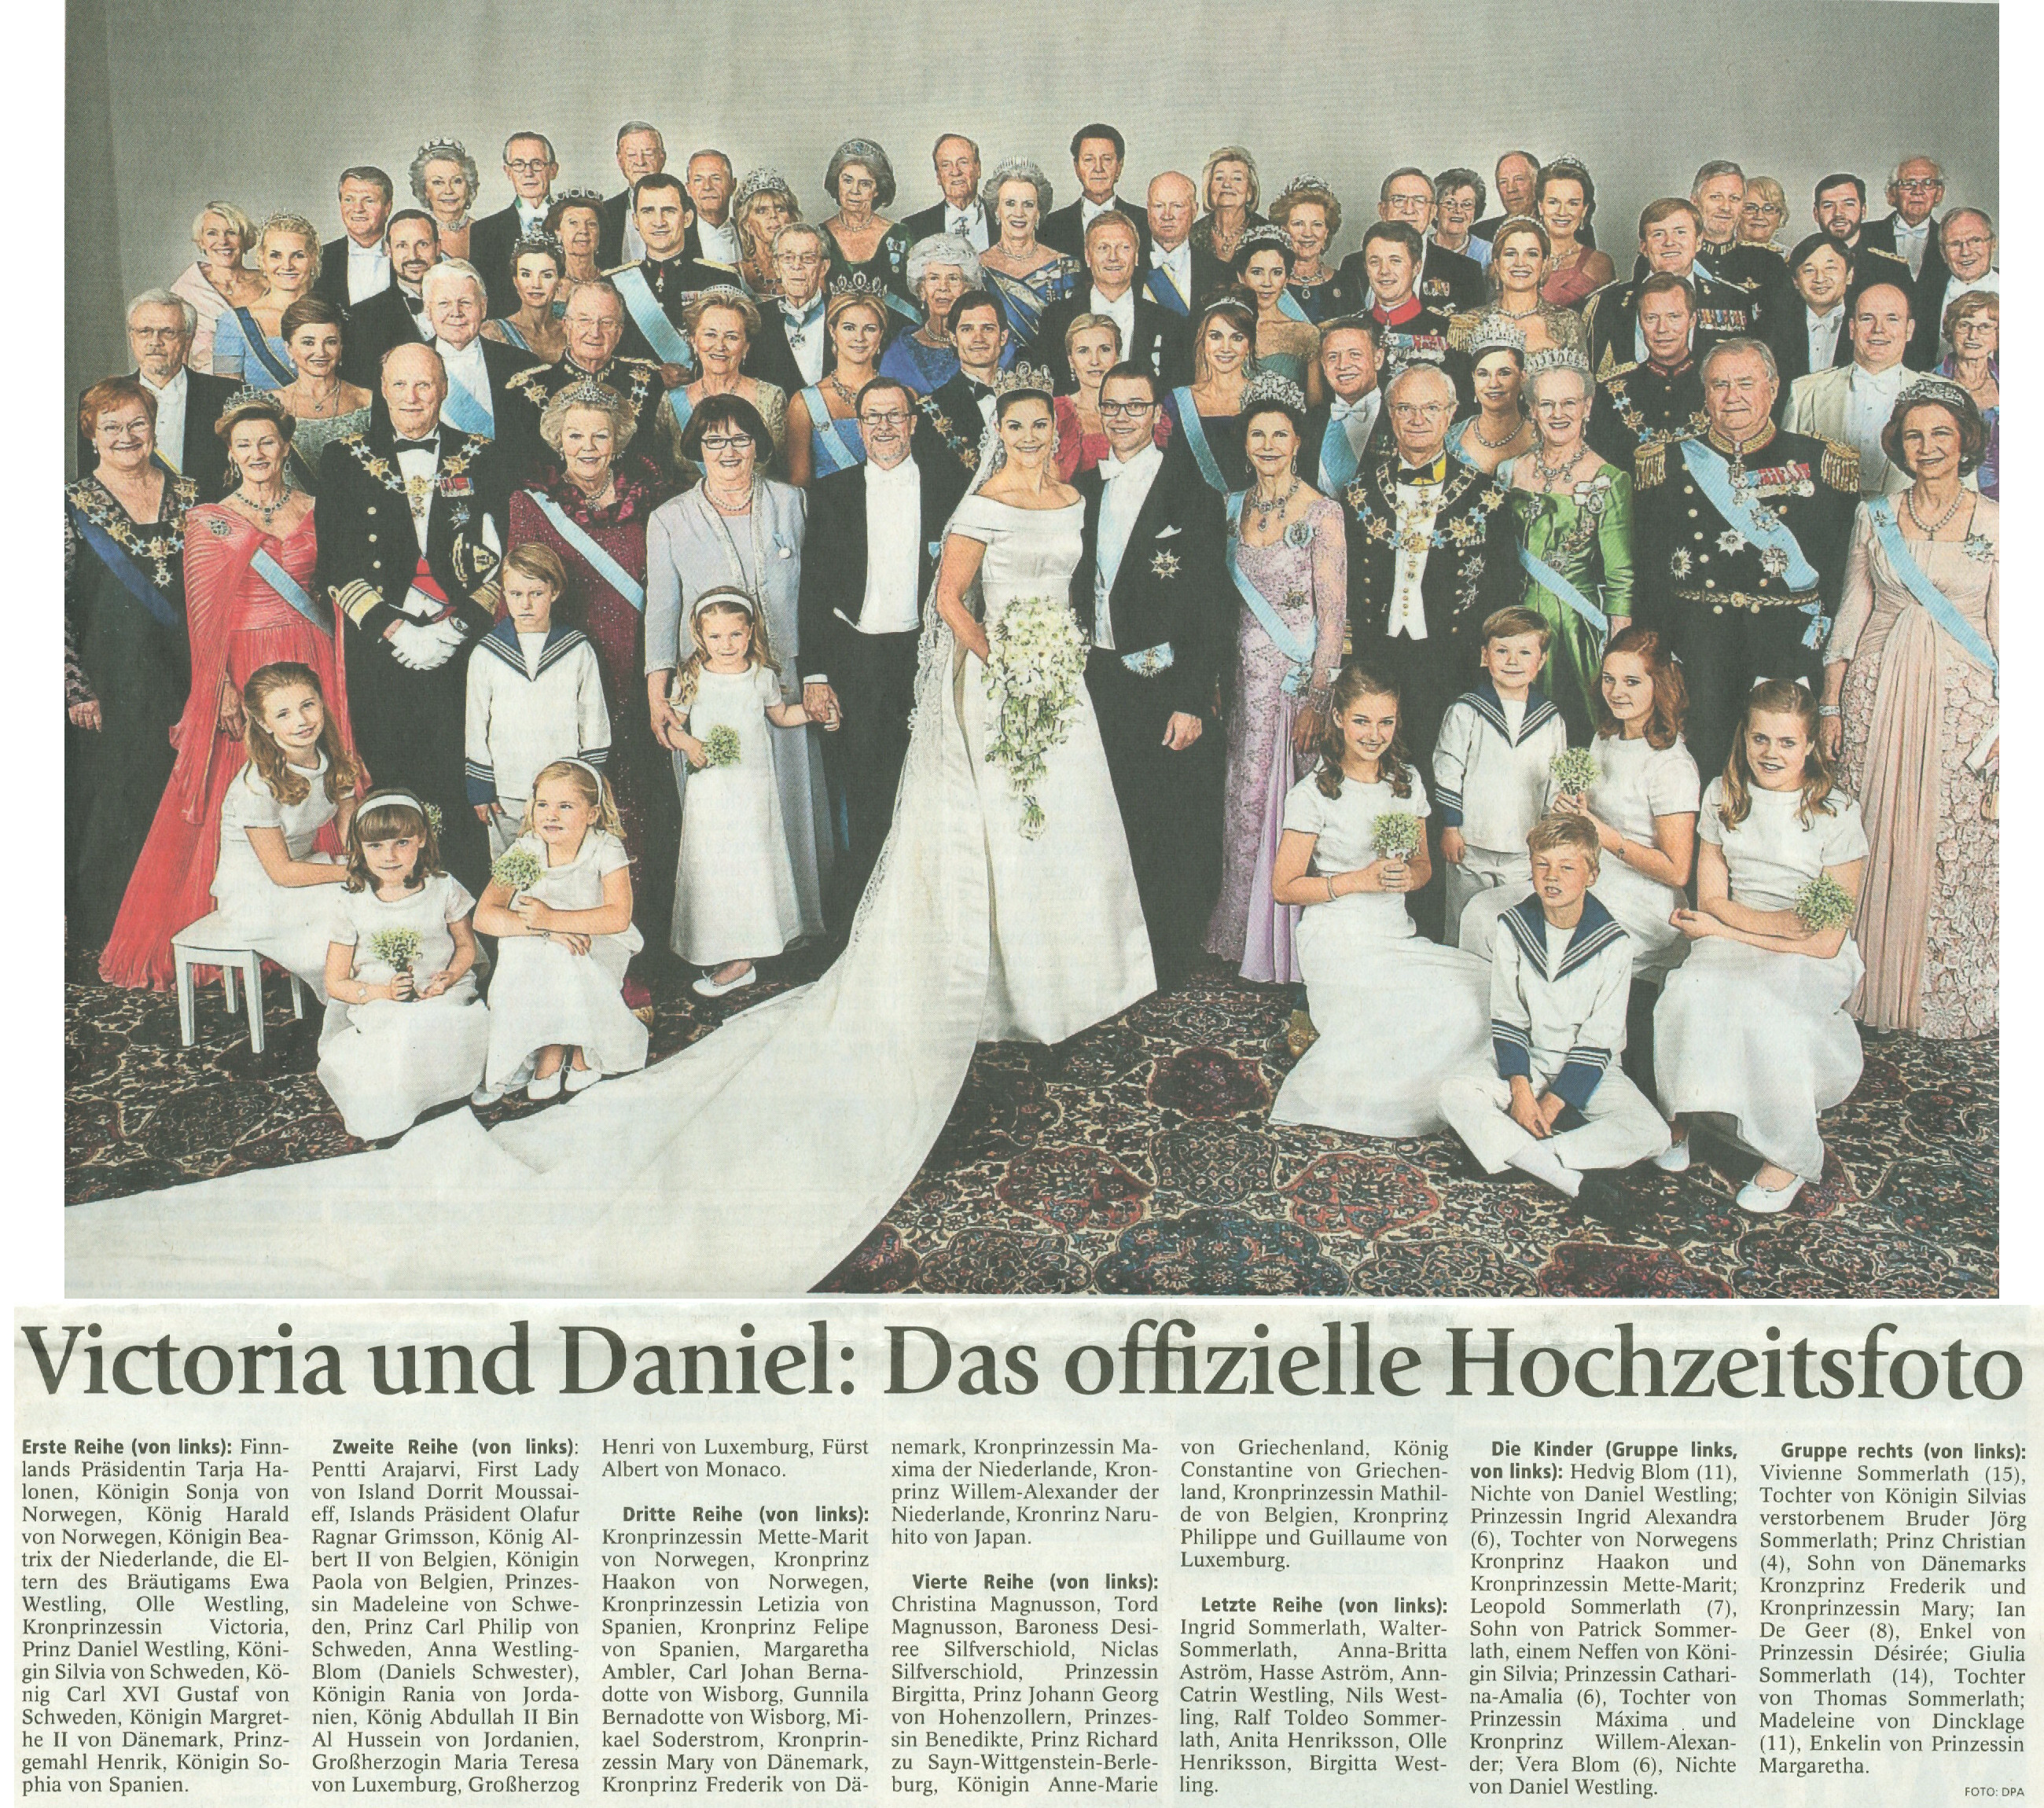 Victoria und Daniel: das offizielle Hochzeitsfoto